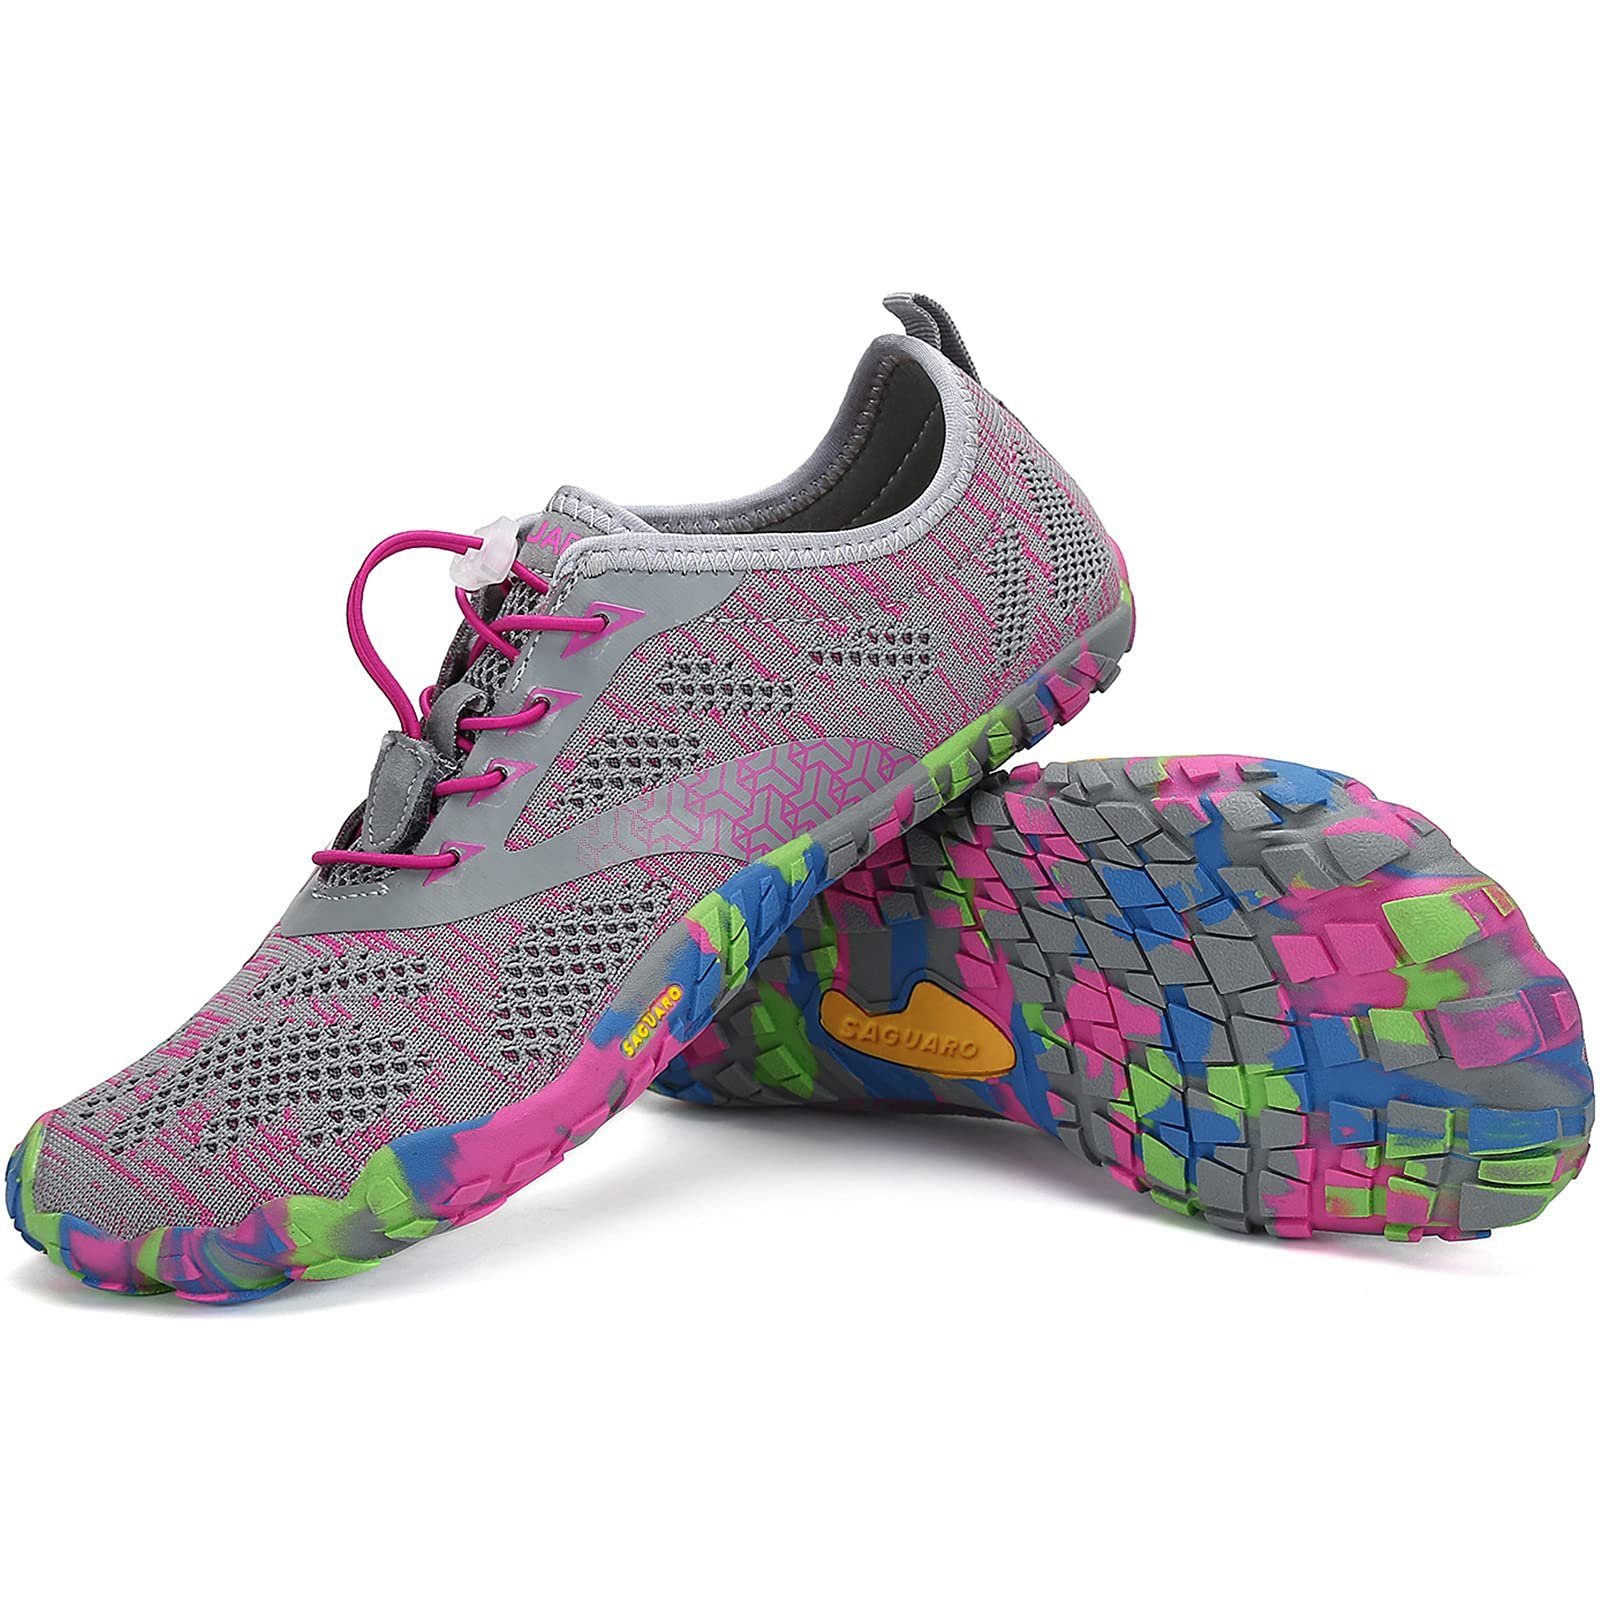 SAGUARO Barfußschuh (bequem, leicht, atmungsaktiv, rutschfest) Minimalschuhe Laufschuhe Sport-Schuhe Jogging Sneaker Trail-Running Pink 034